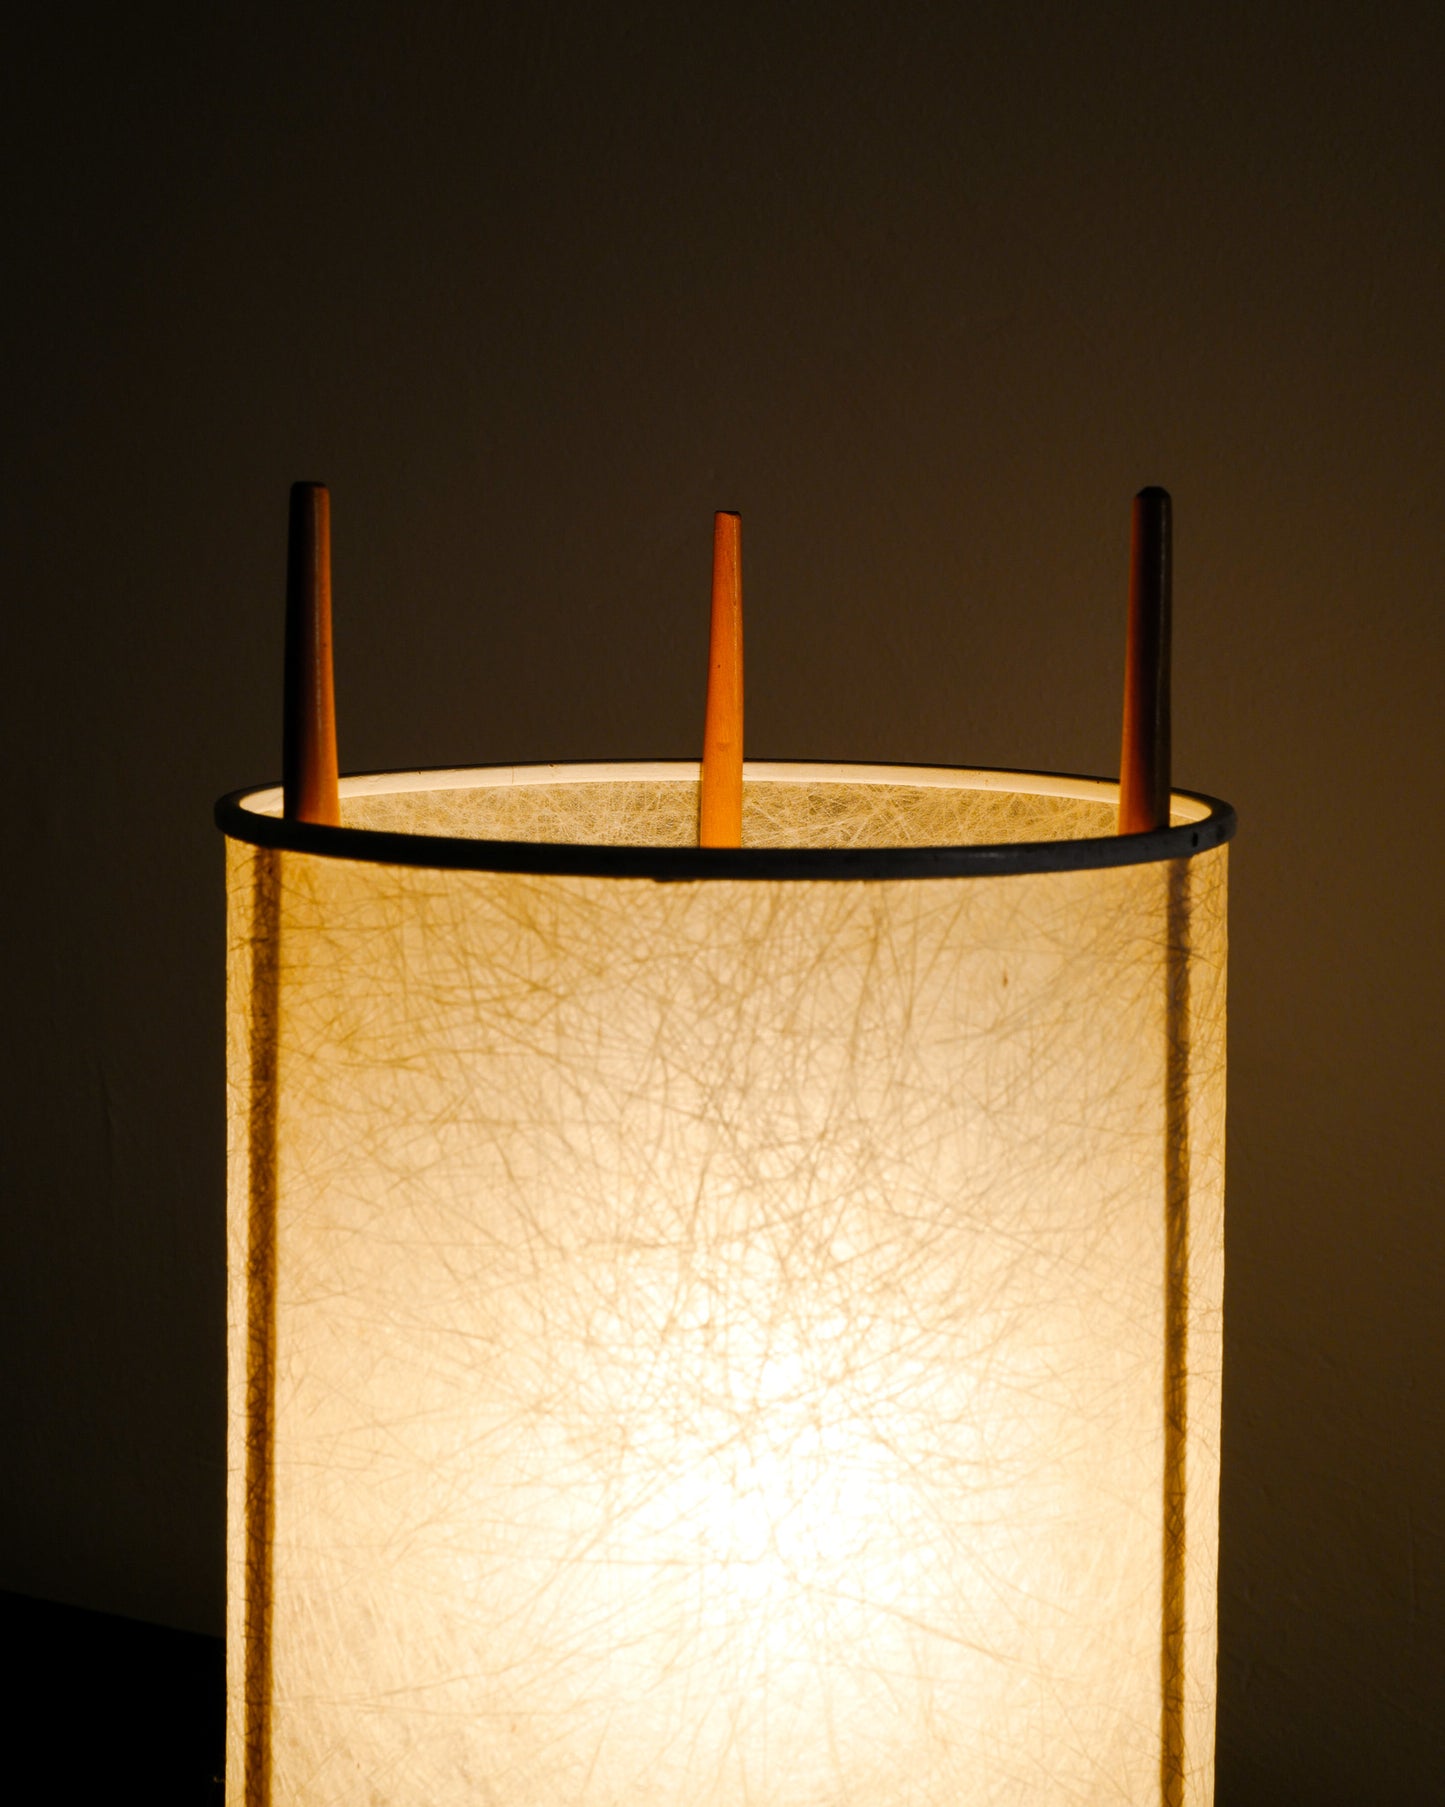 ISAMU NOGUCHI "No 9" TABLE LAMPS, 1940s